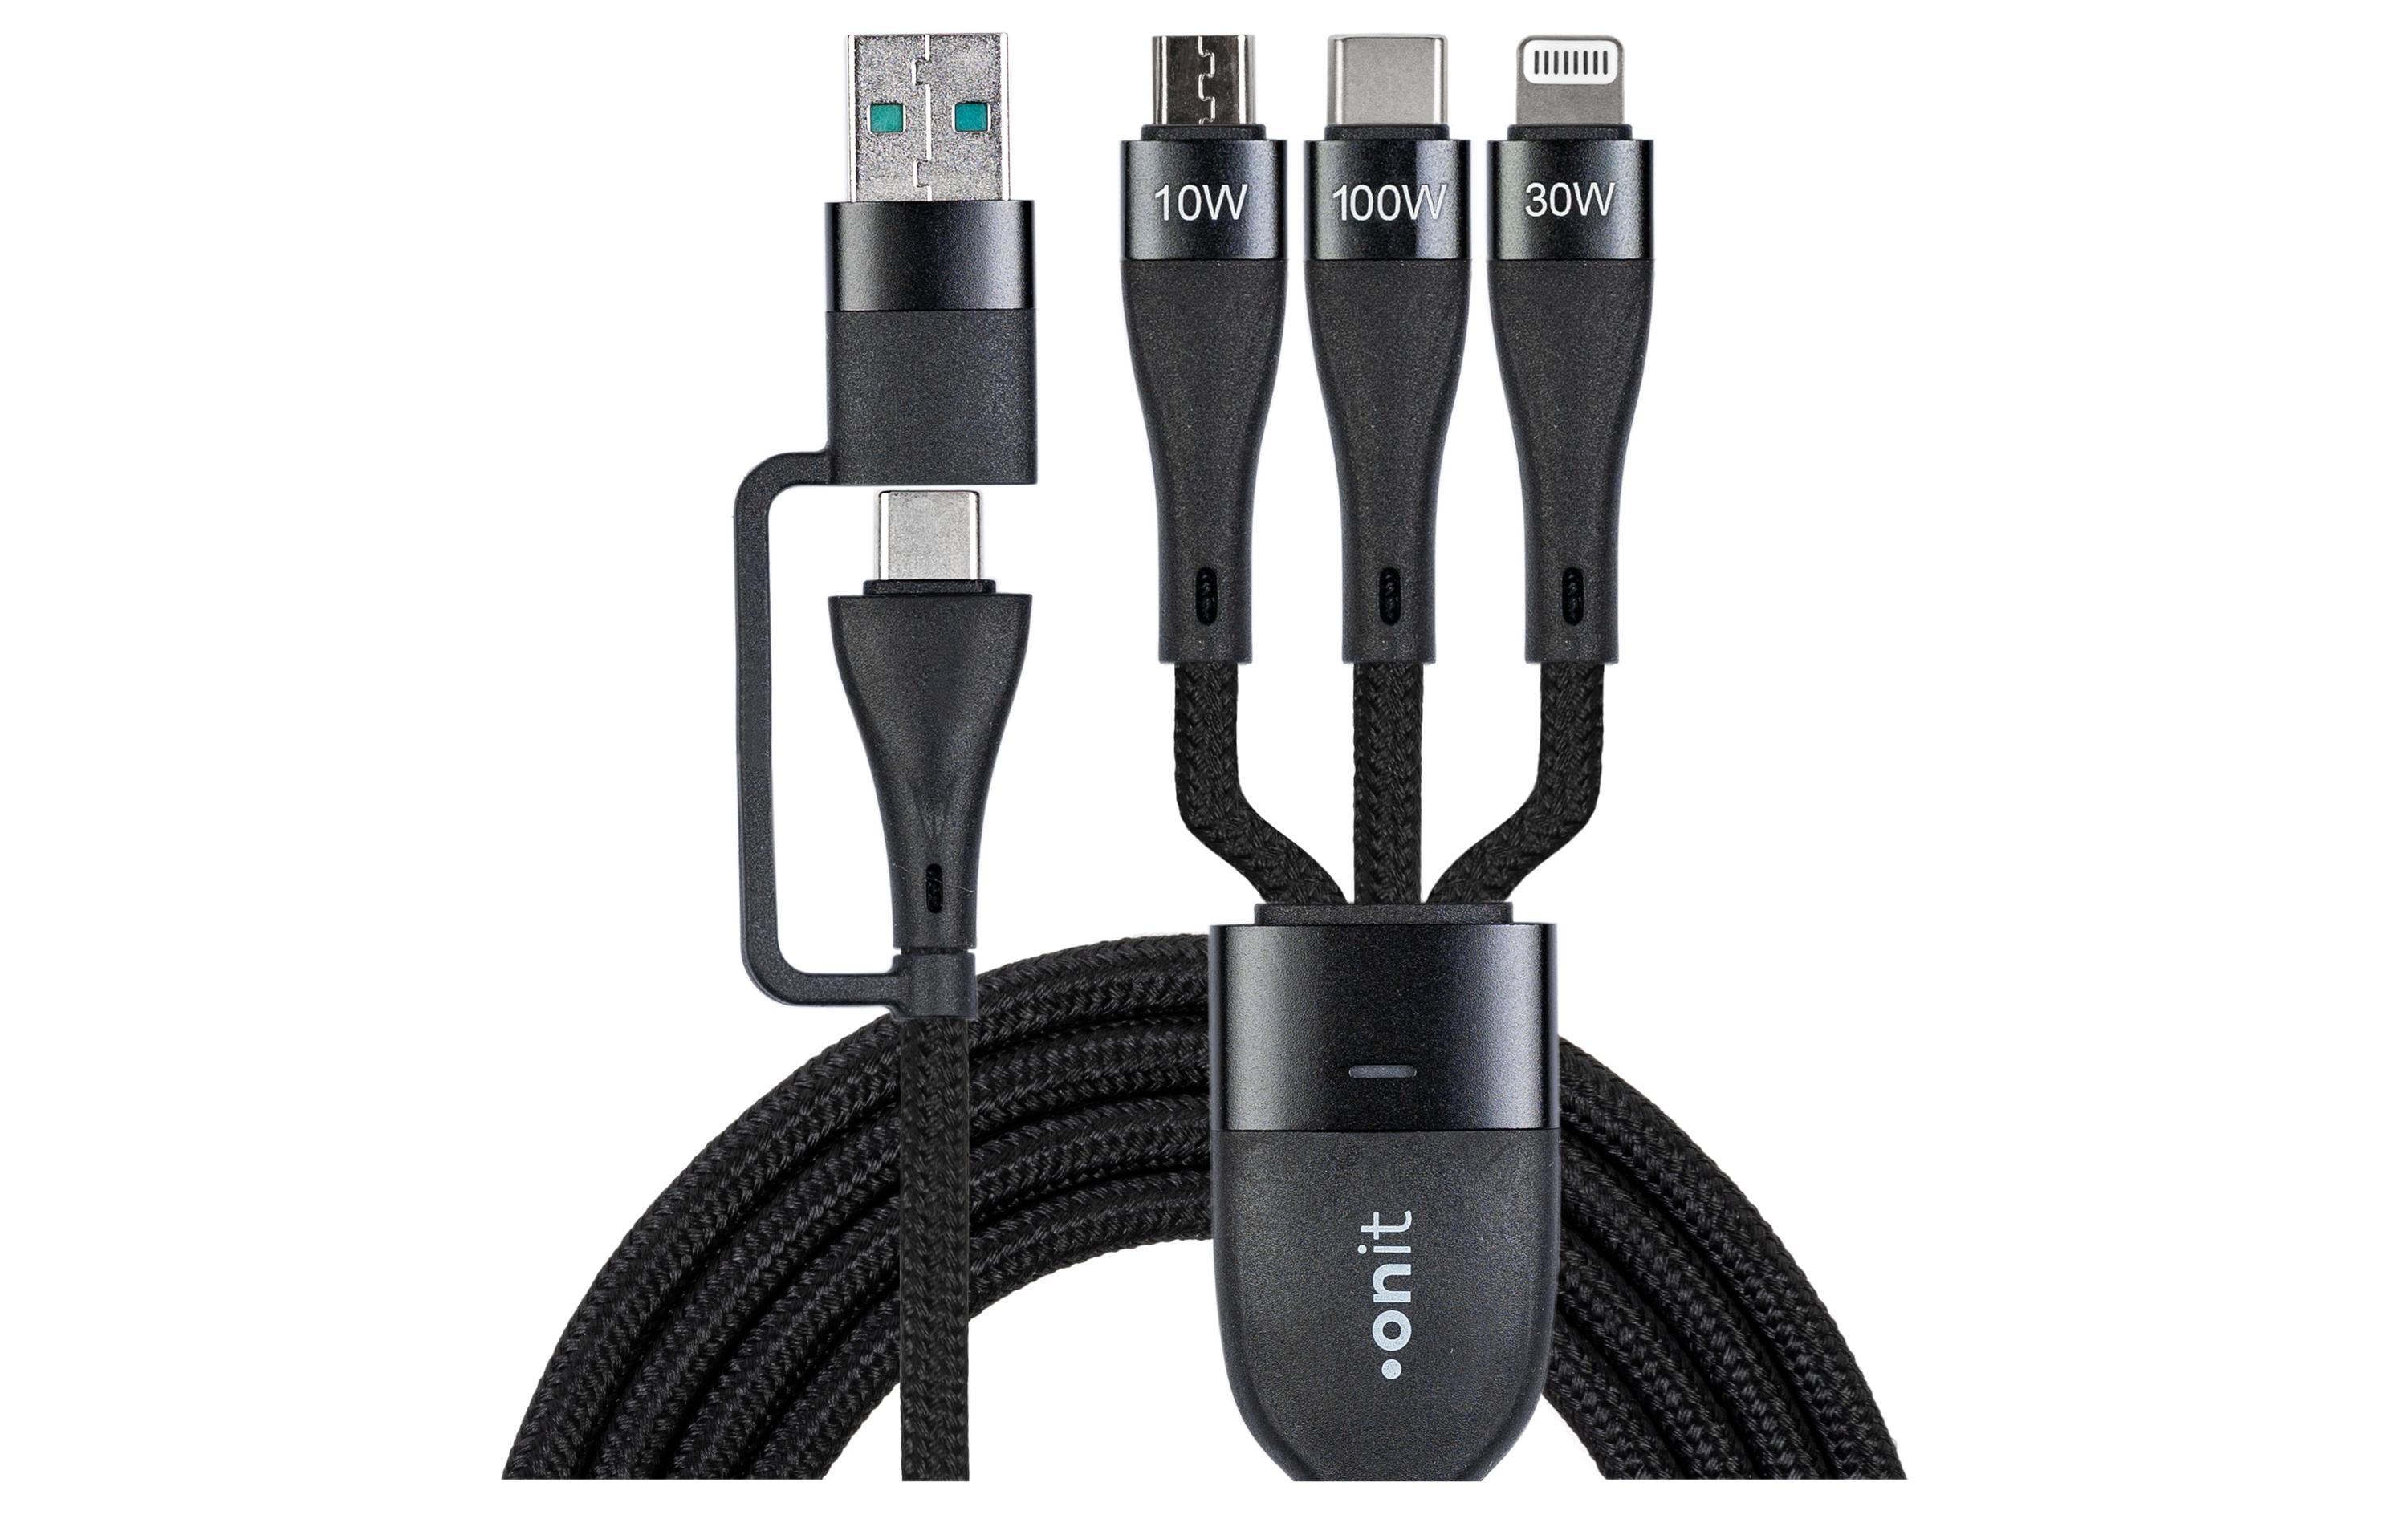 onit USB 2.0-Kabel USB A/USB C - Lightning/Micro-USB B/USB C